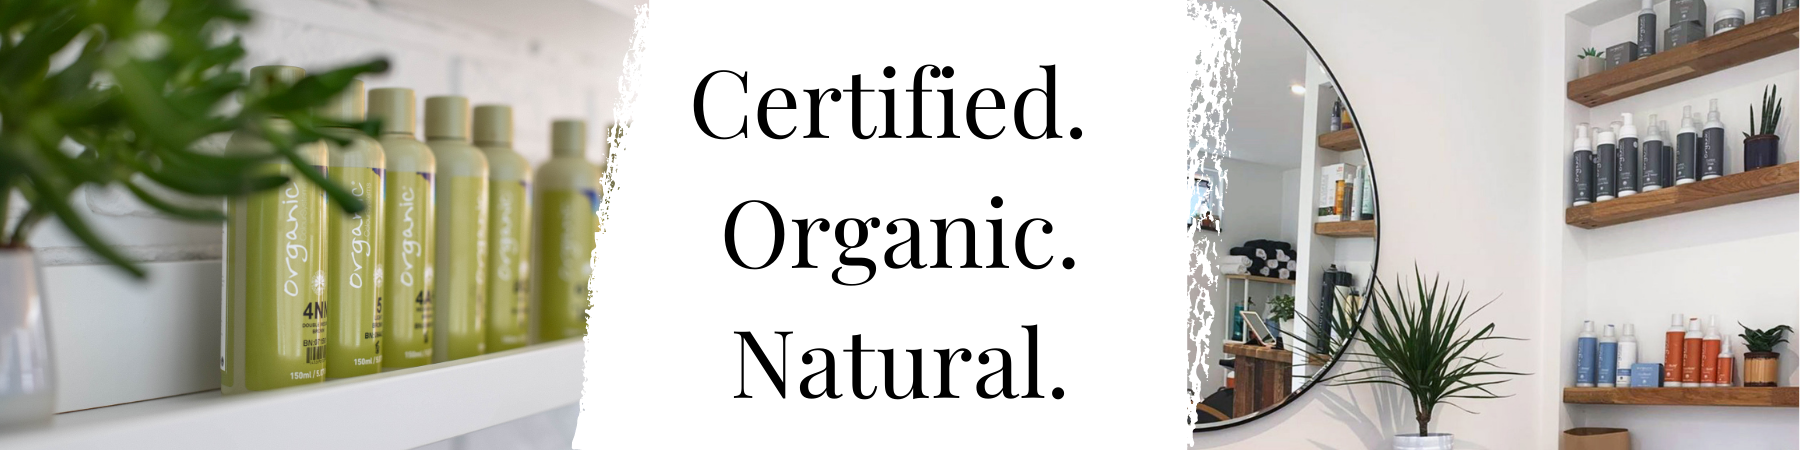 OCS-certified-organic-natural